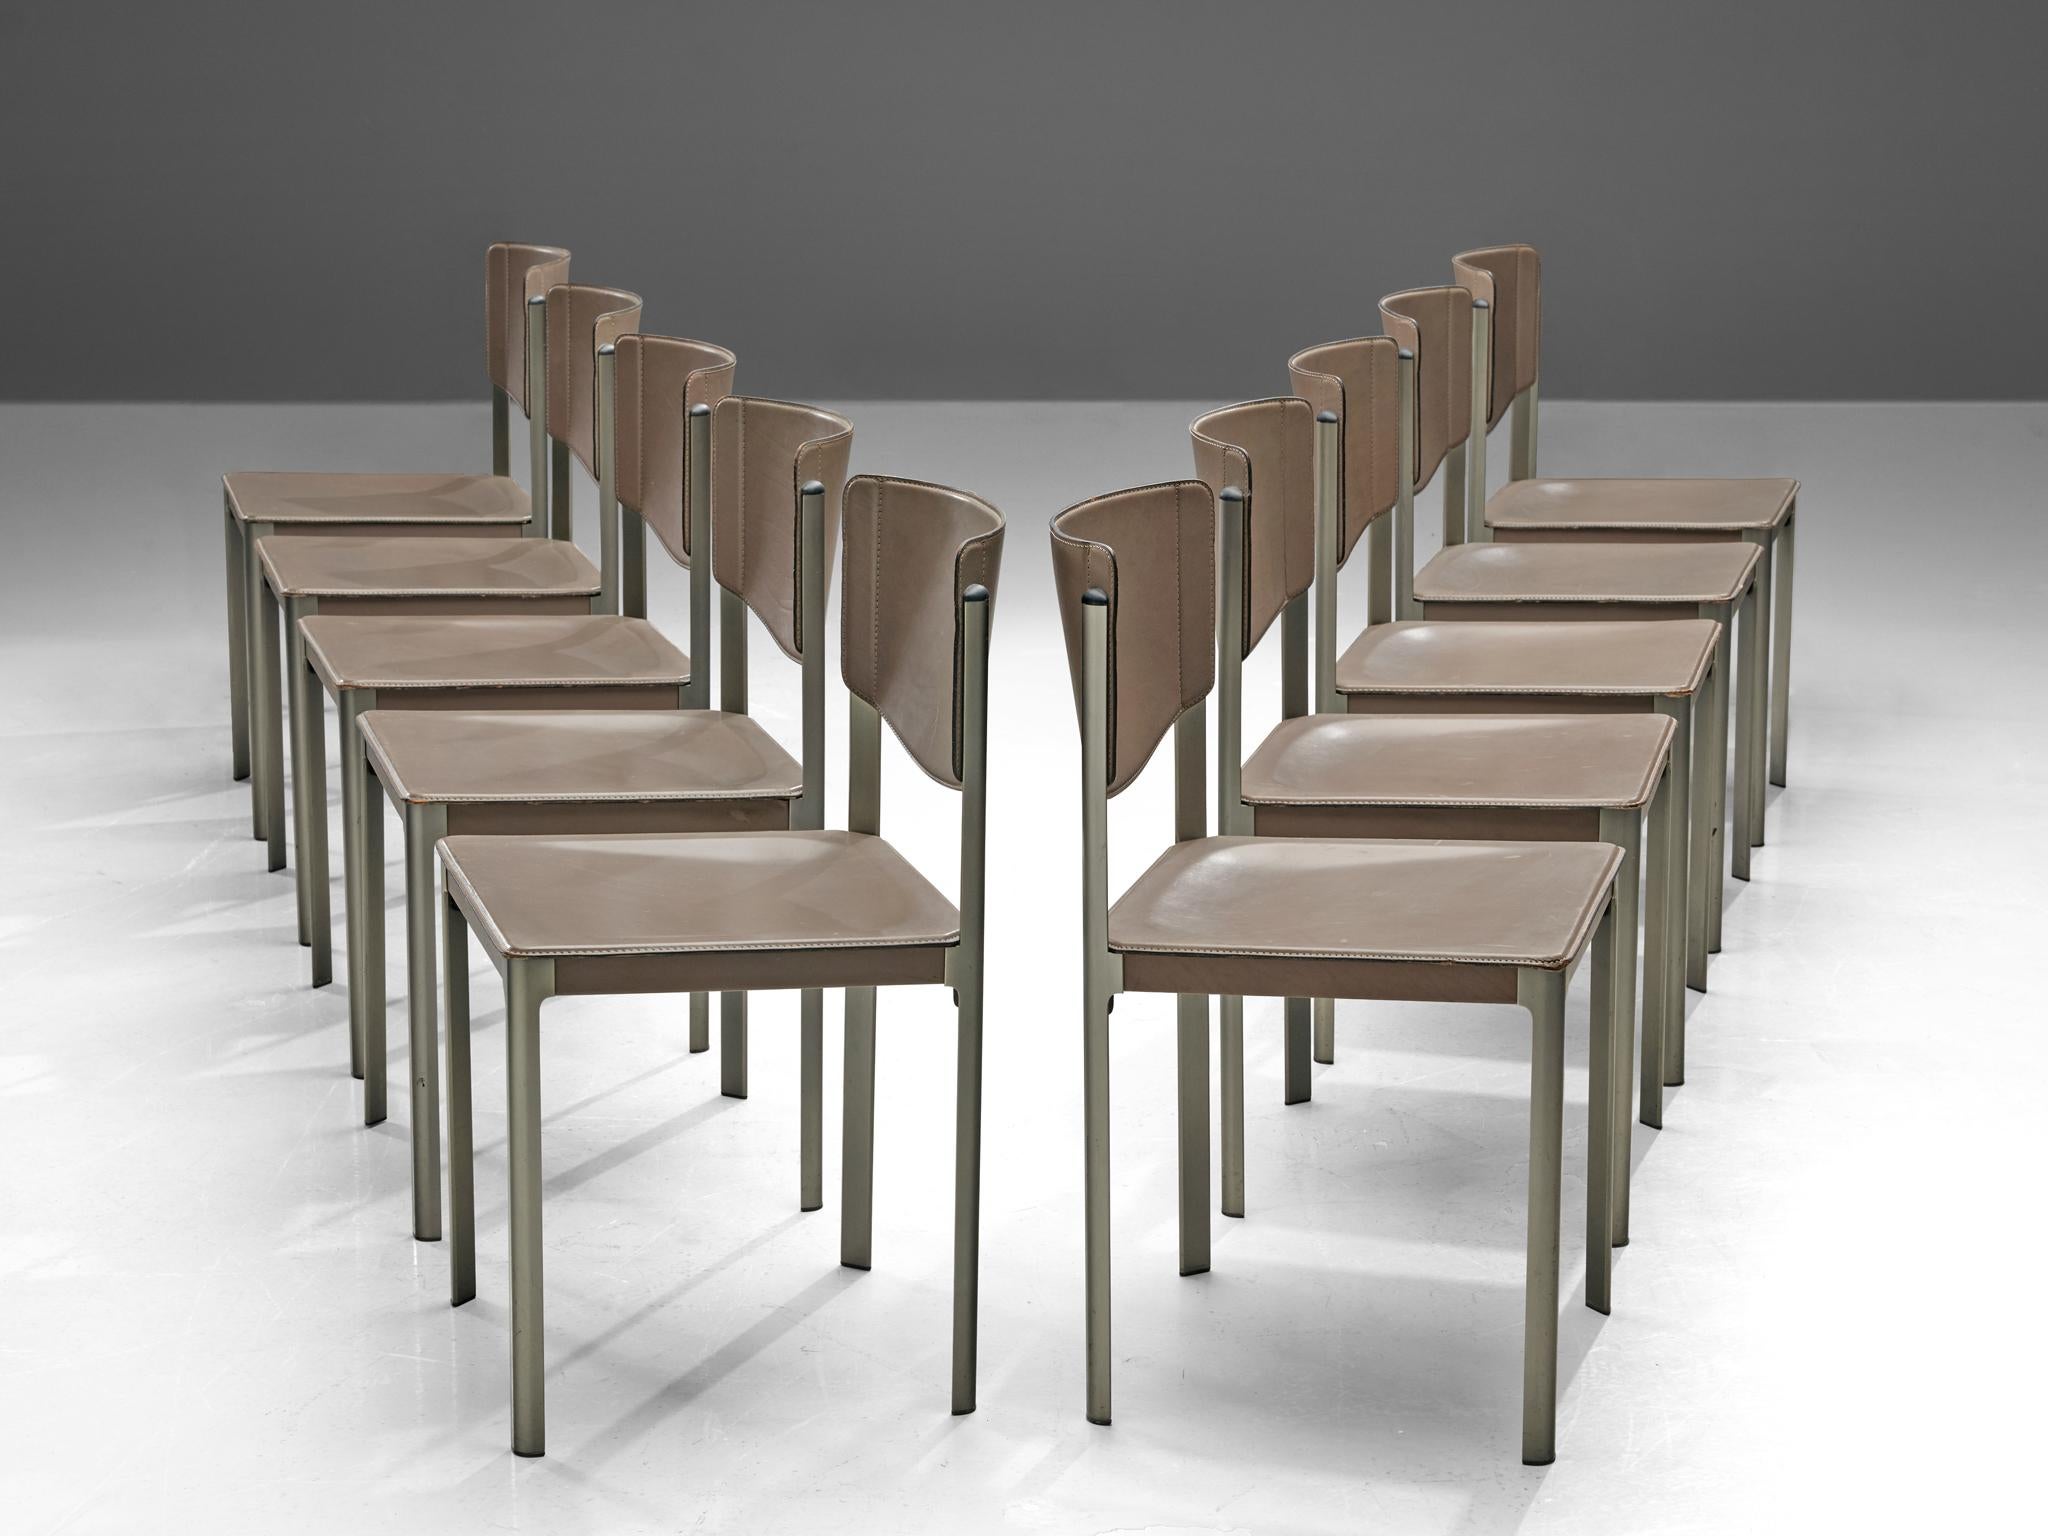 Matteo Grassi, Satz von zehn Esszimmerstühlen, Leder und Stahl, Italien, 1980er Jahre.

Anspruchsvolles Set aus zehn Esszimmerstühlen, entworfen vom italienischen Designer Matteo Grassi in den 1980er Jahren. Diese Stühle sind an den Rückenlehnen und